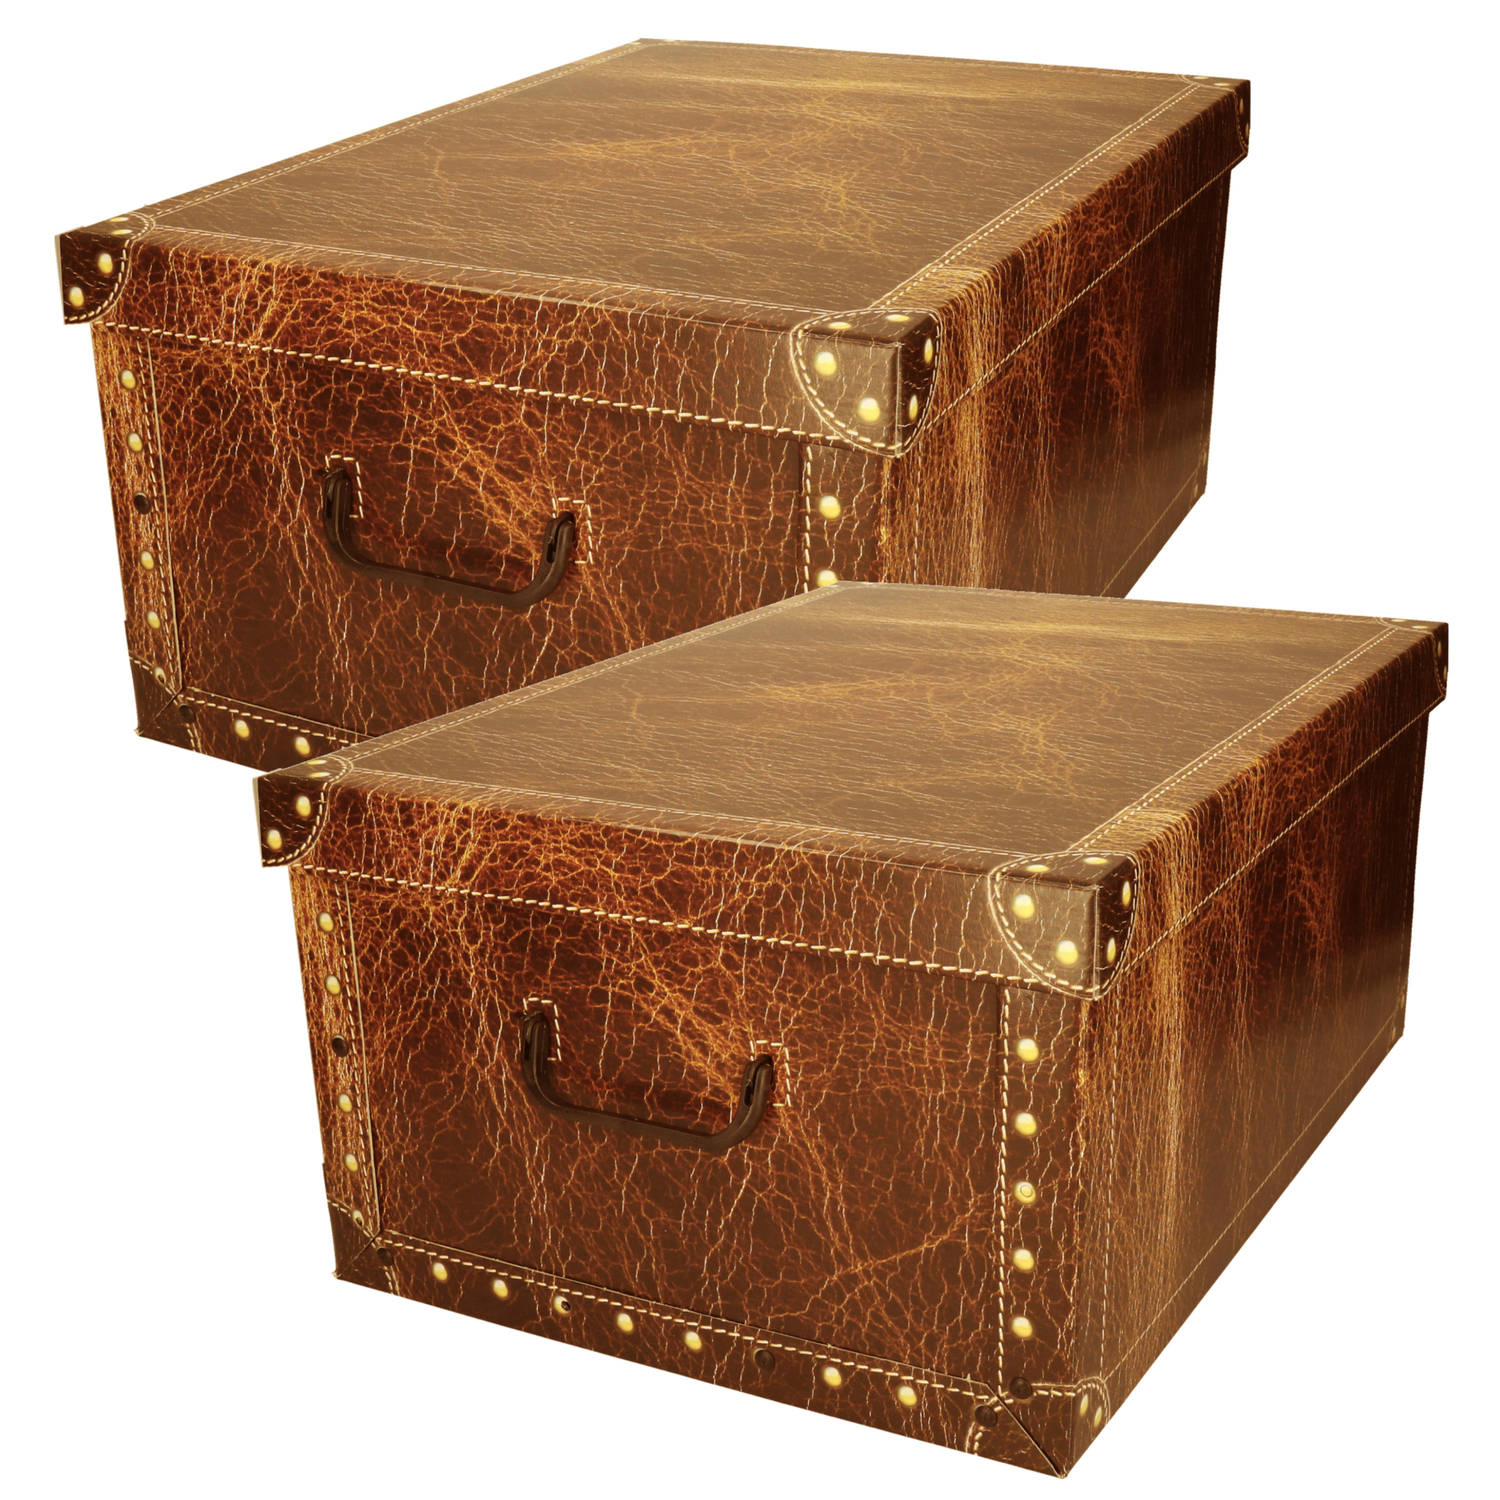 Pakket van 2x stuks opbergbox/opbergdoos van karton bruin leer motief 51 x 37 x 24 cm met deksel - Opbergbox